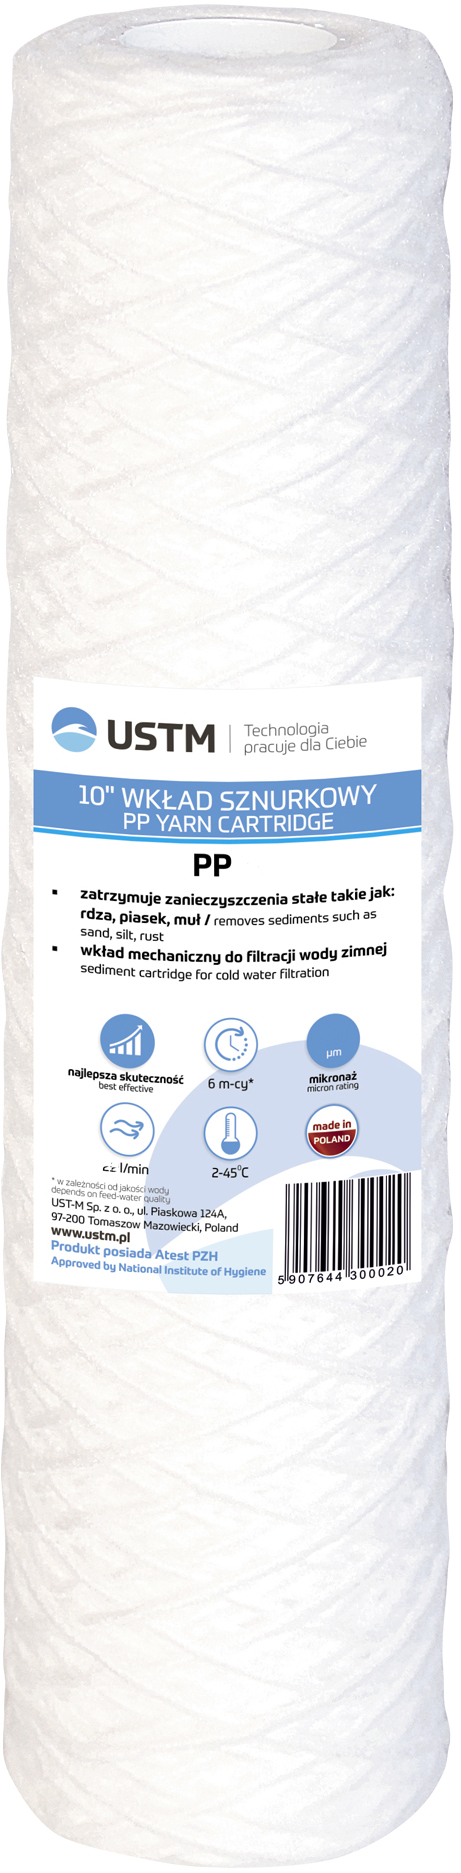 Картридж для фильтра USTM PP5 в интернет-магазине, главное фото